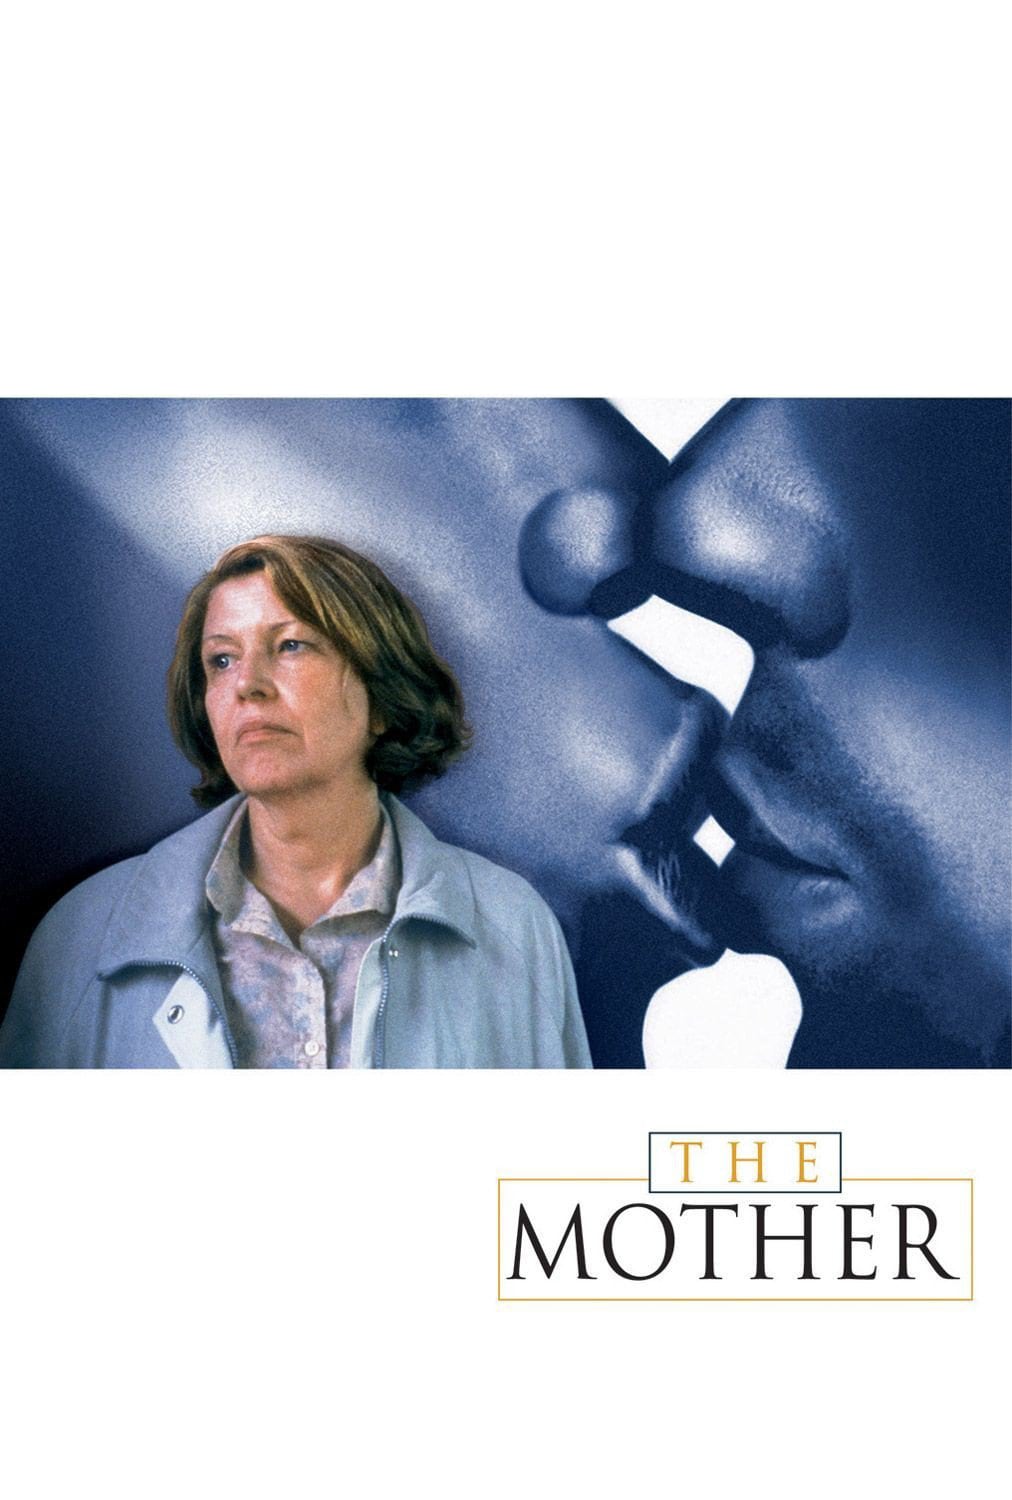 Plakat von "The Mother"